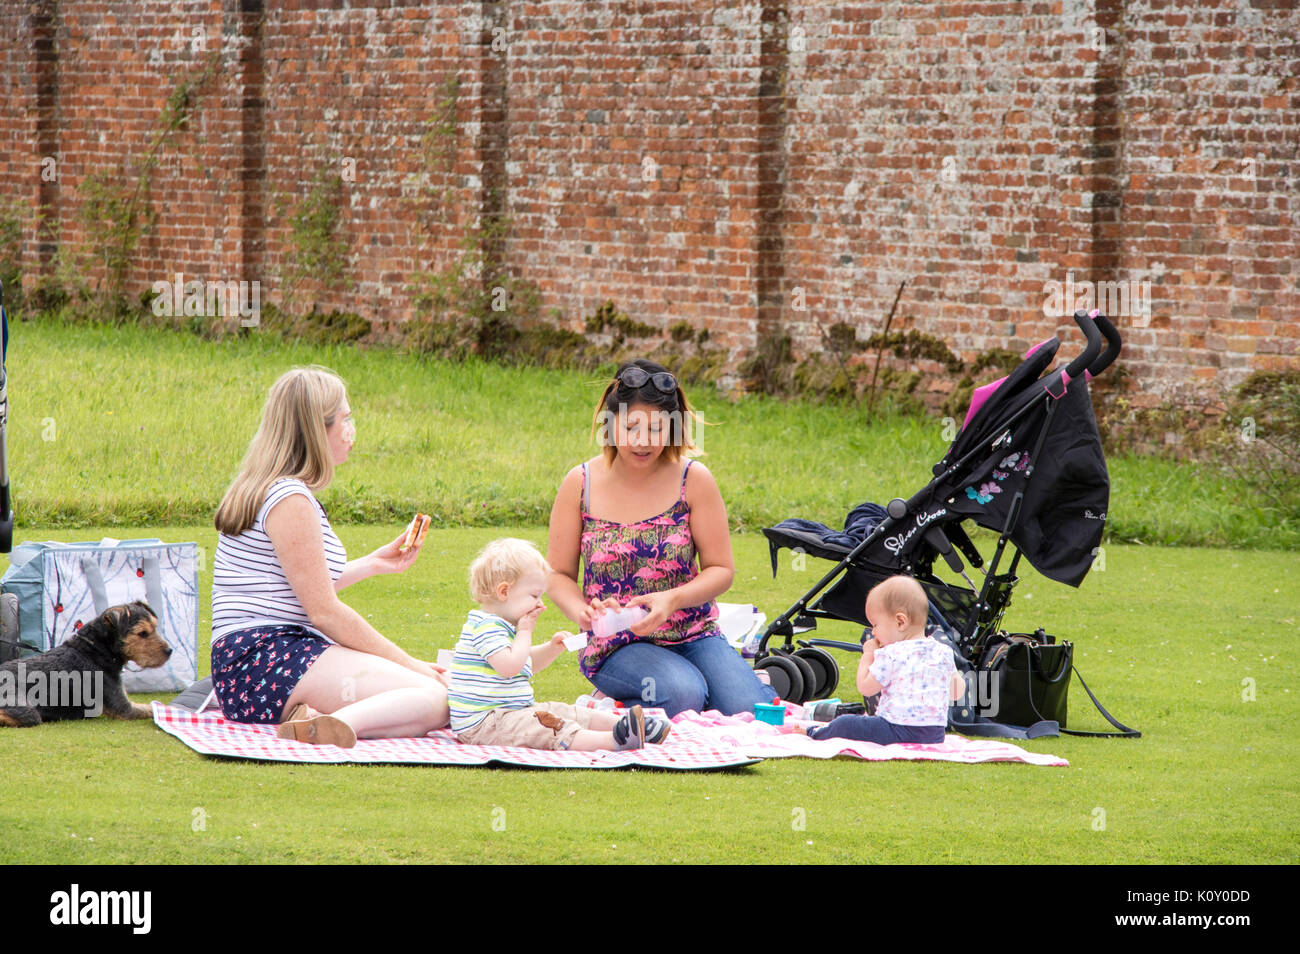 Deux mères avec des bébés ayant un pique-nique estival, England, UK Banque D'Images